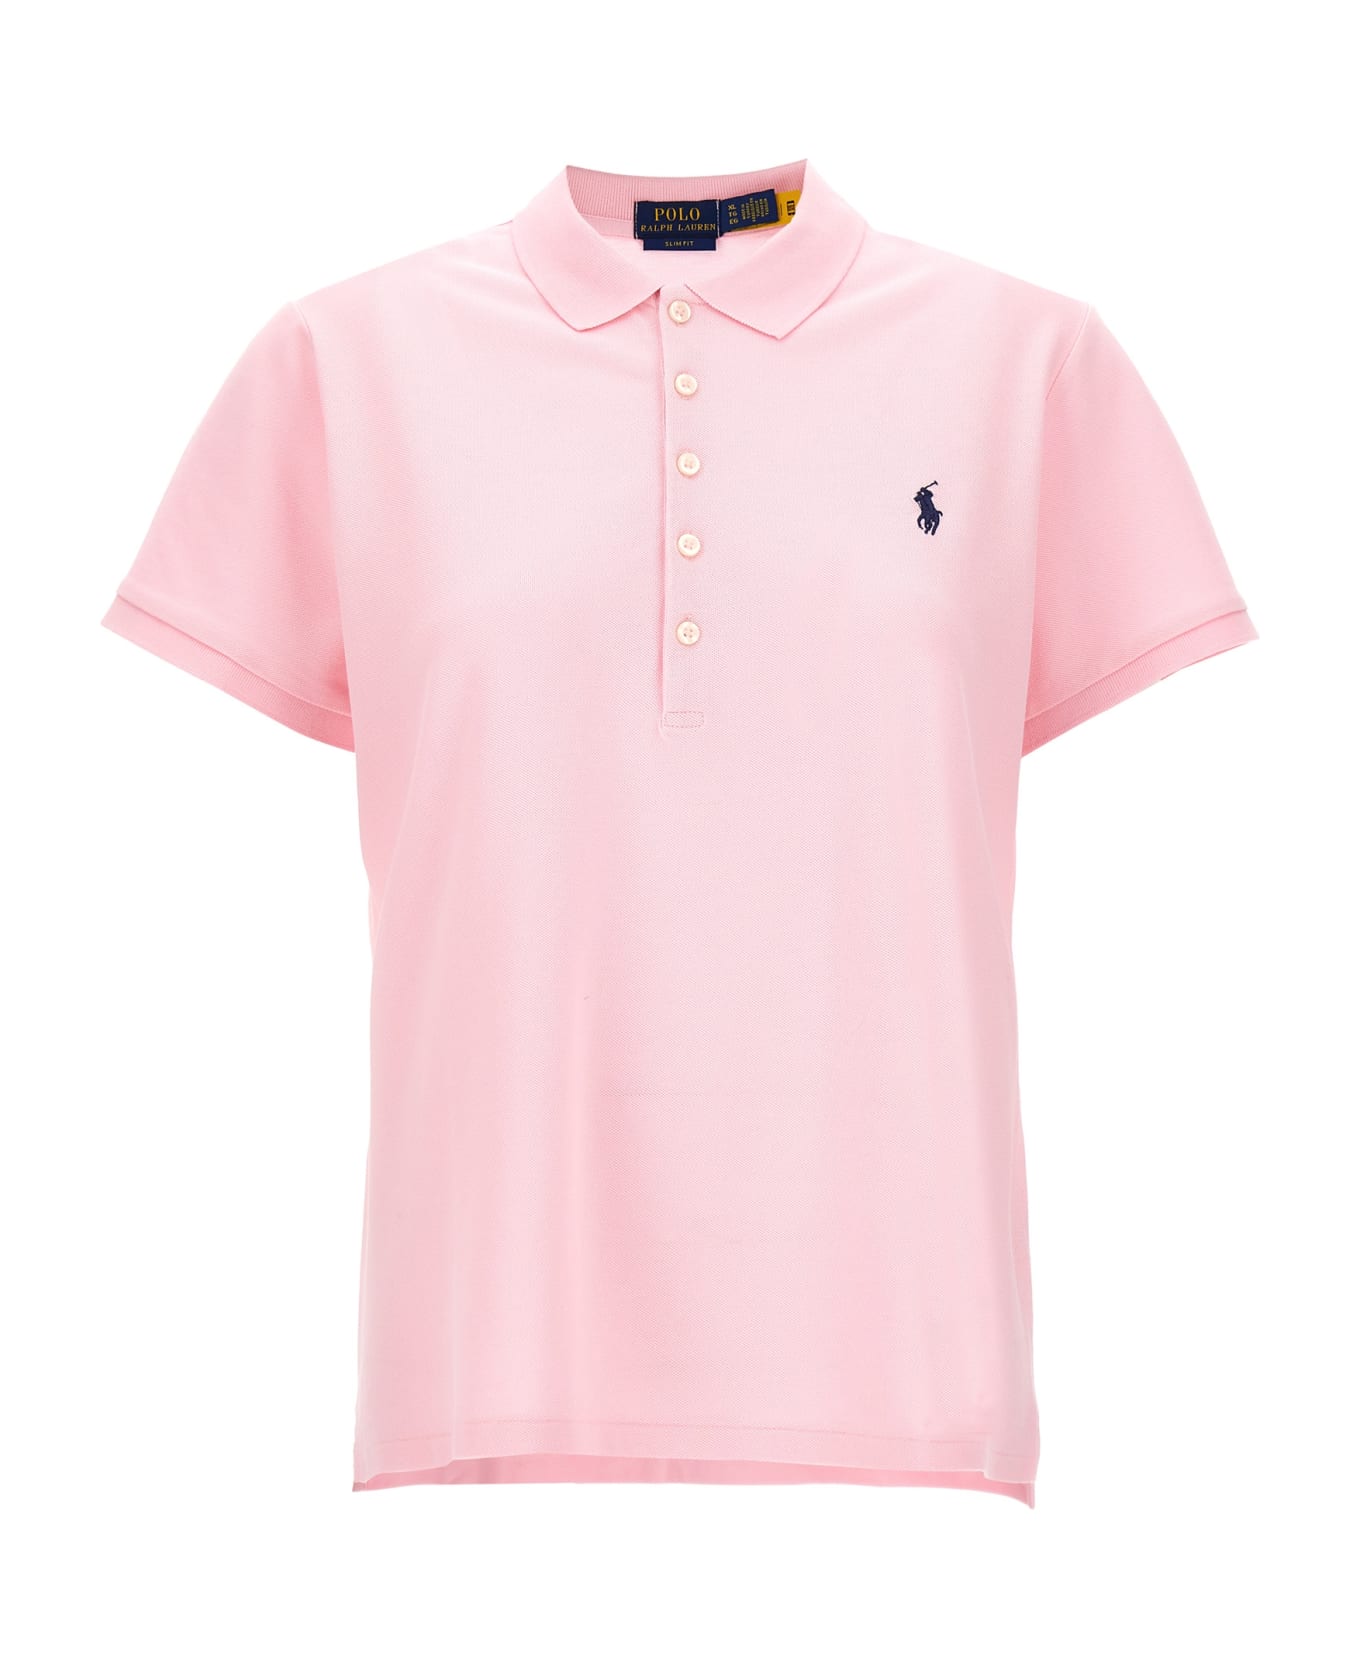 Polo Ralph Lauren 'julie' Polo Shirt - Pink